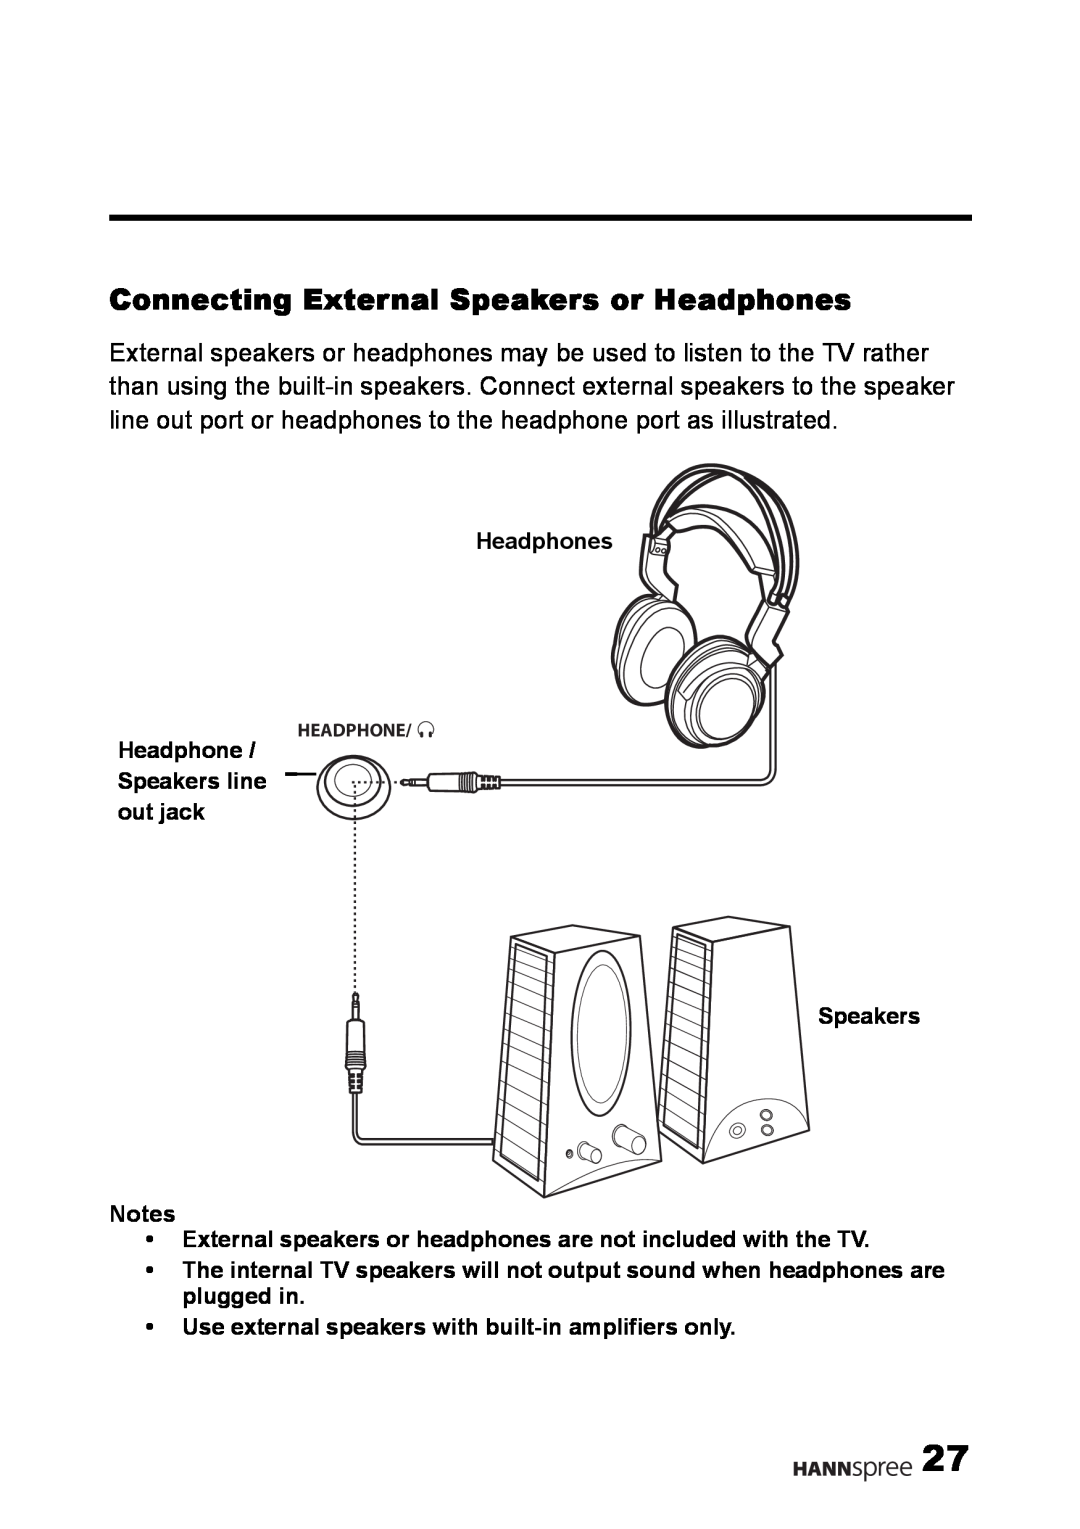 HANNspree LT02-12U1-000 user manual Connecting External Speakers or Headphones 